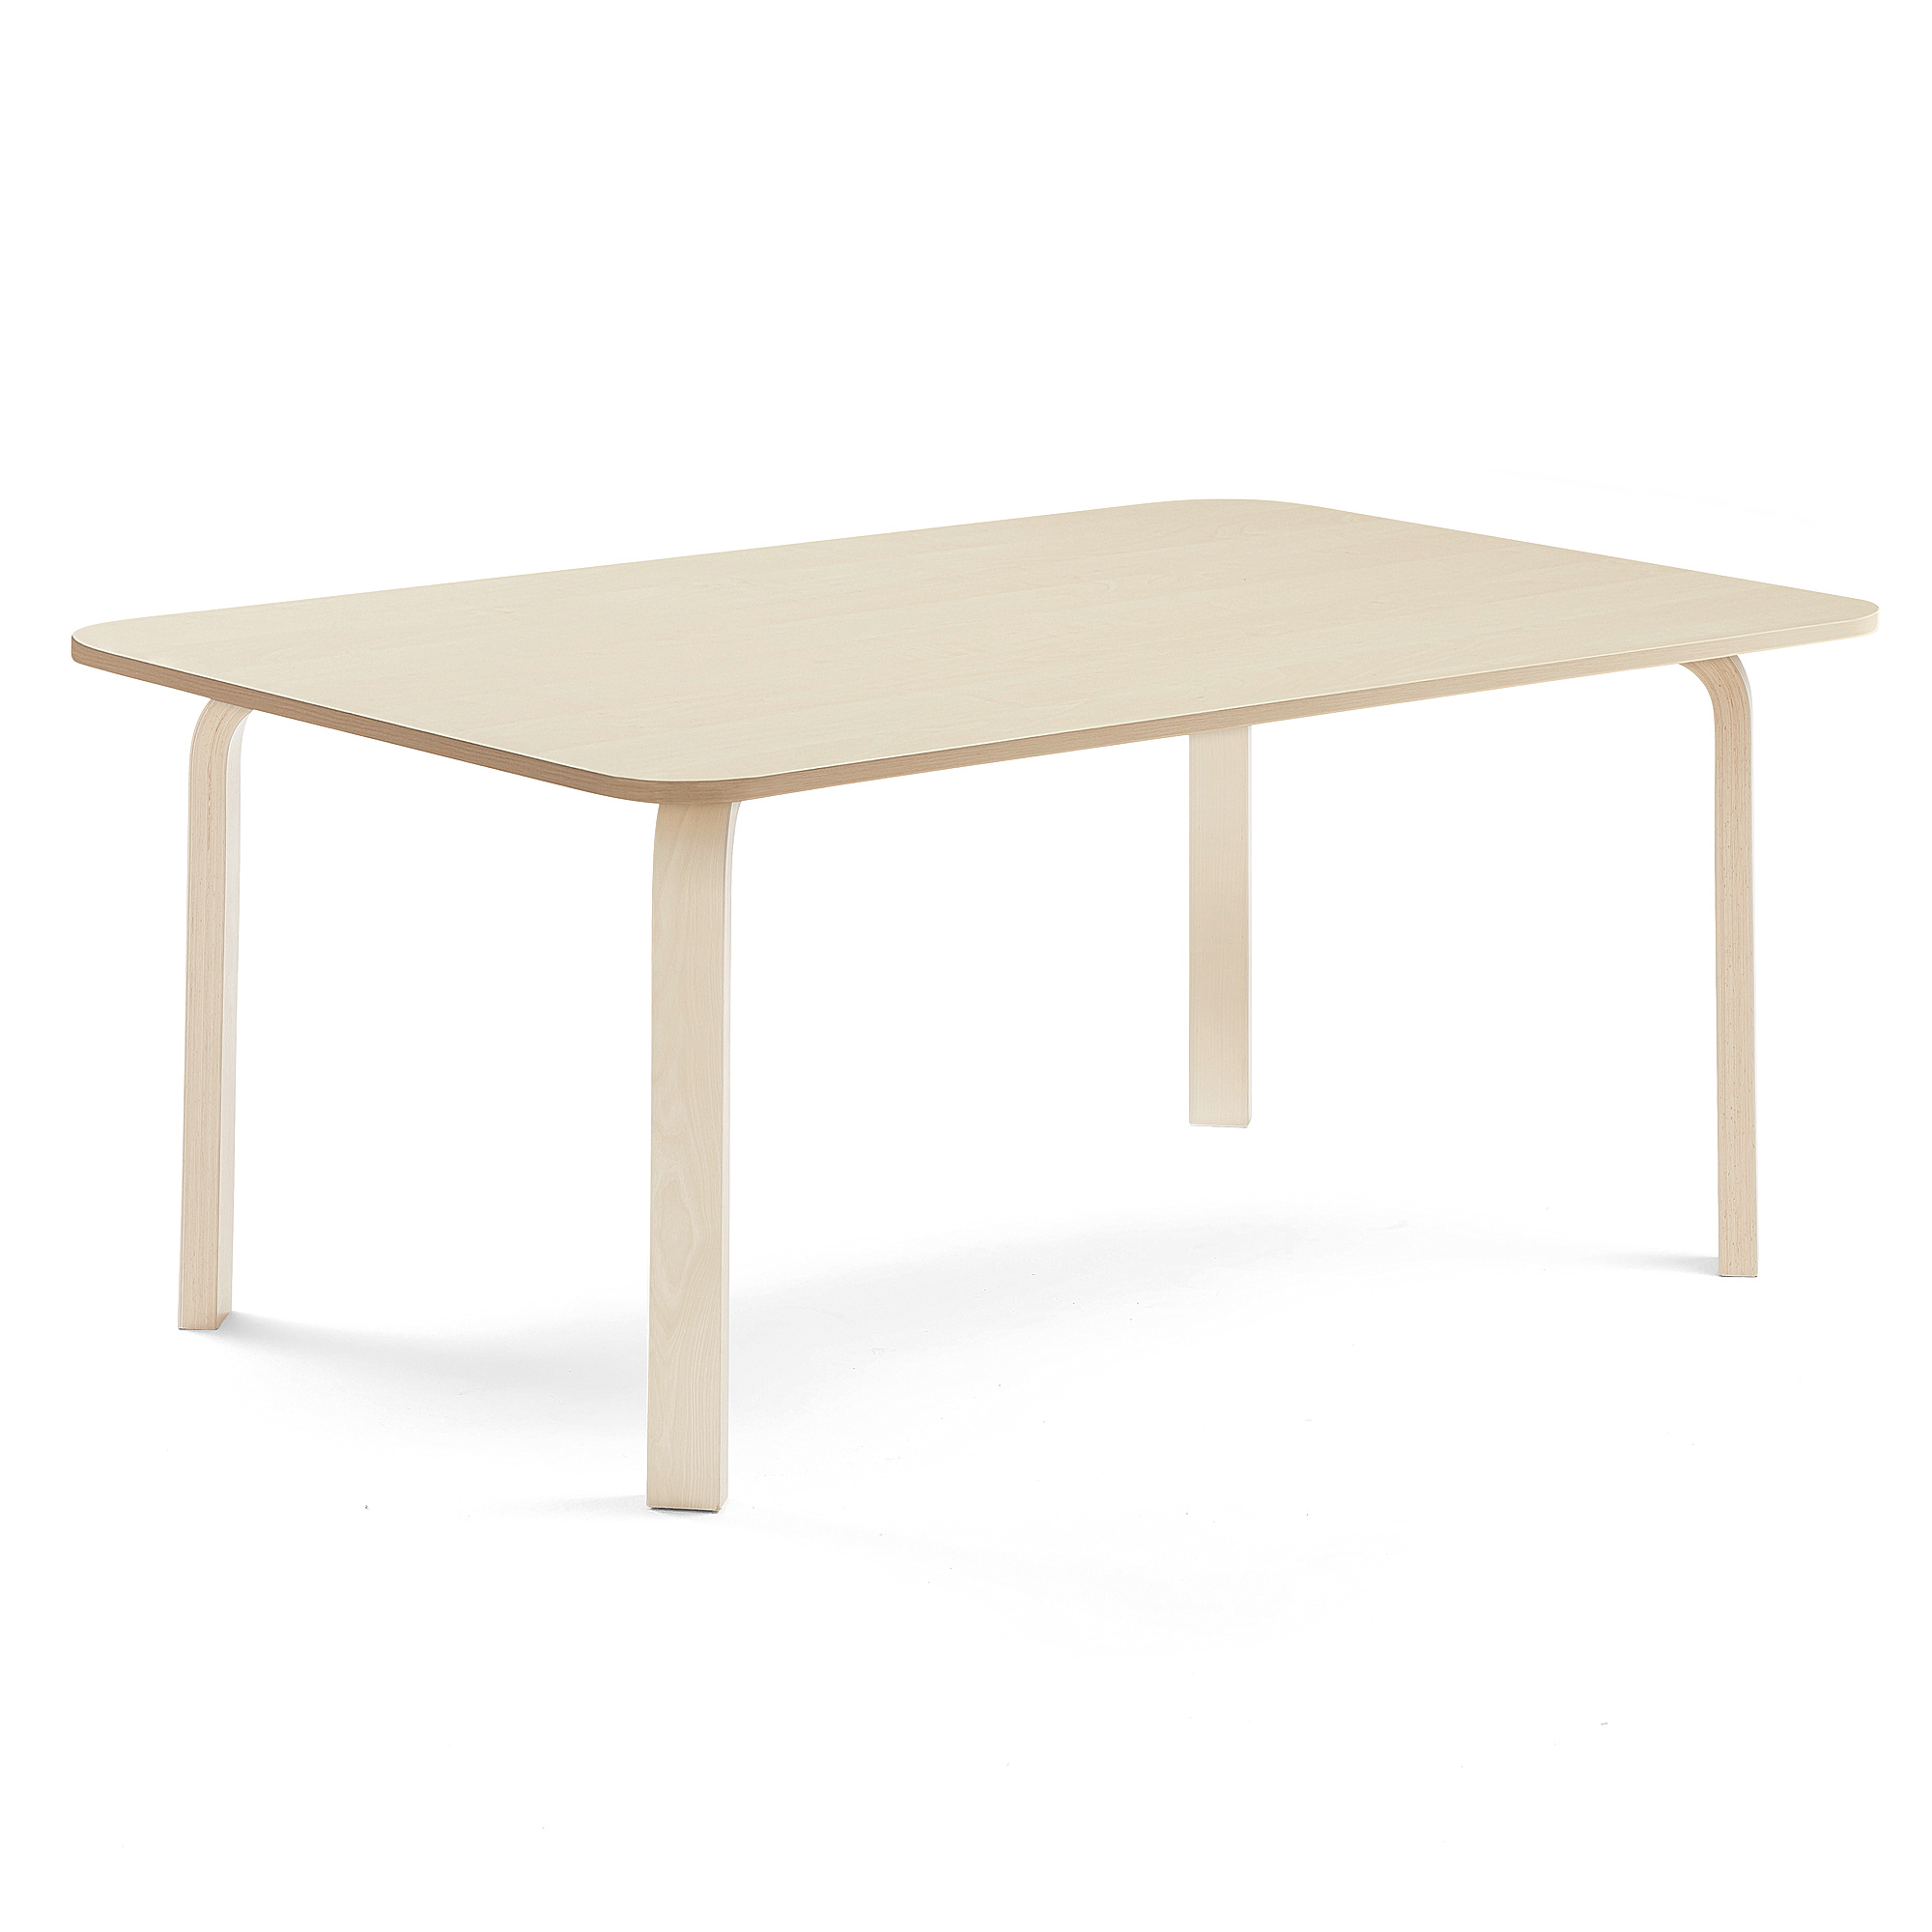 Stůl ELTON, 1800x800x590 mm, bříza, akustická HPL deska, bříza